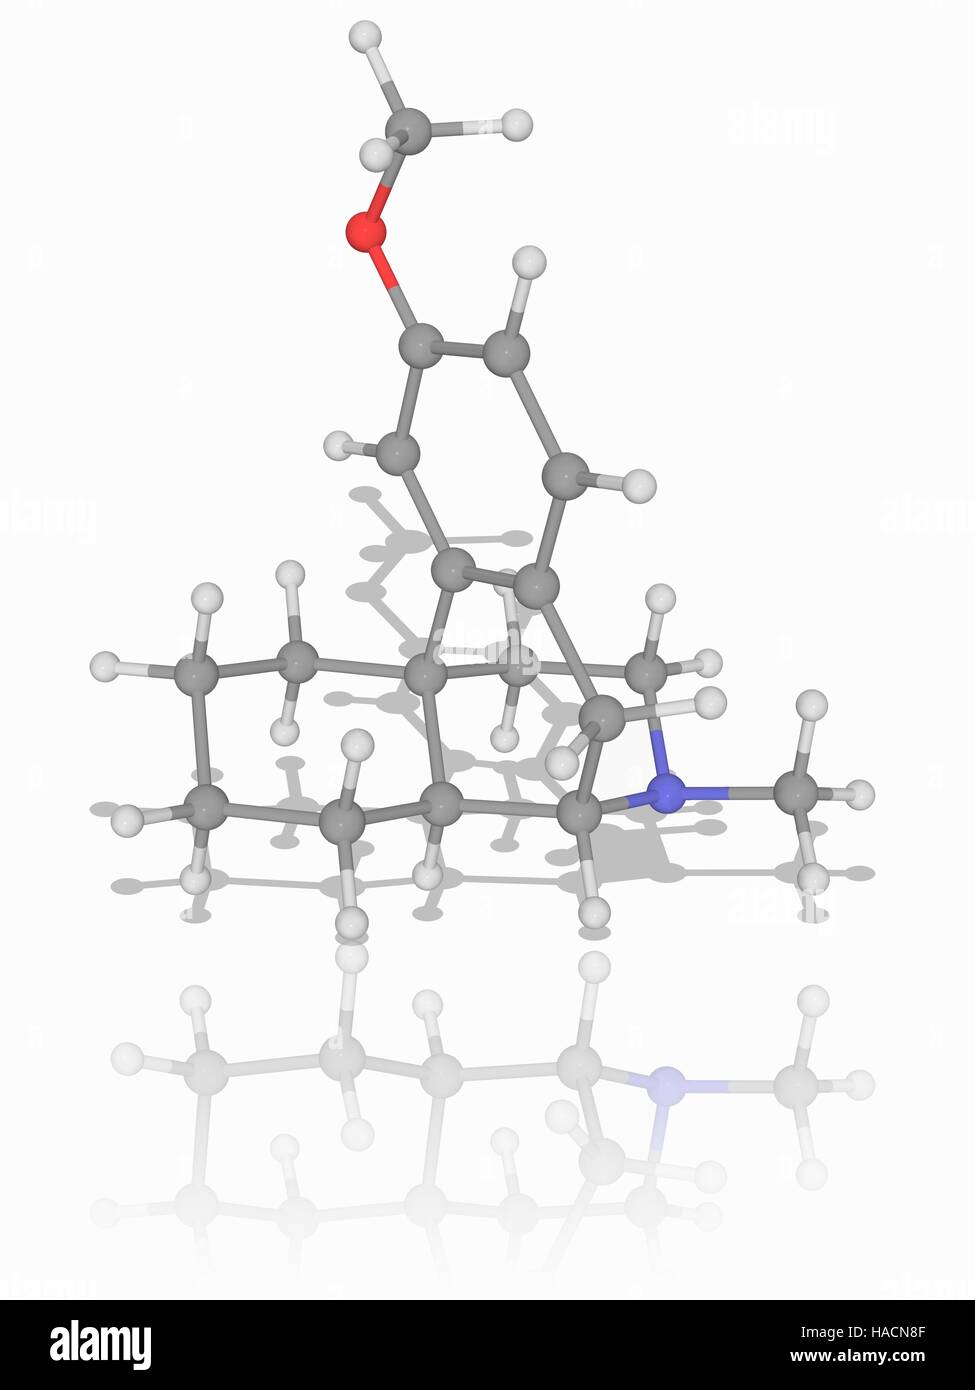 Dextromethorphan. Molekulares Modell des Anti-Husten (Anti-Hustenmitteln) Wirkstoff Dextromethorphan (C18. H25. NAVI). Atome als Kugeln dargestellt werden und sind farblich gekennzeichnet: Kohlenstoff (grau), Wasserstoff (weiß), Stickstoff (blau) und Sauerstoff (rot). Abbildung. Stockfoto